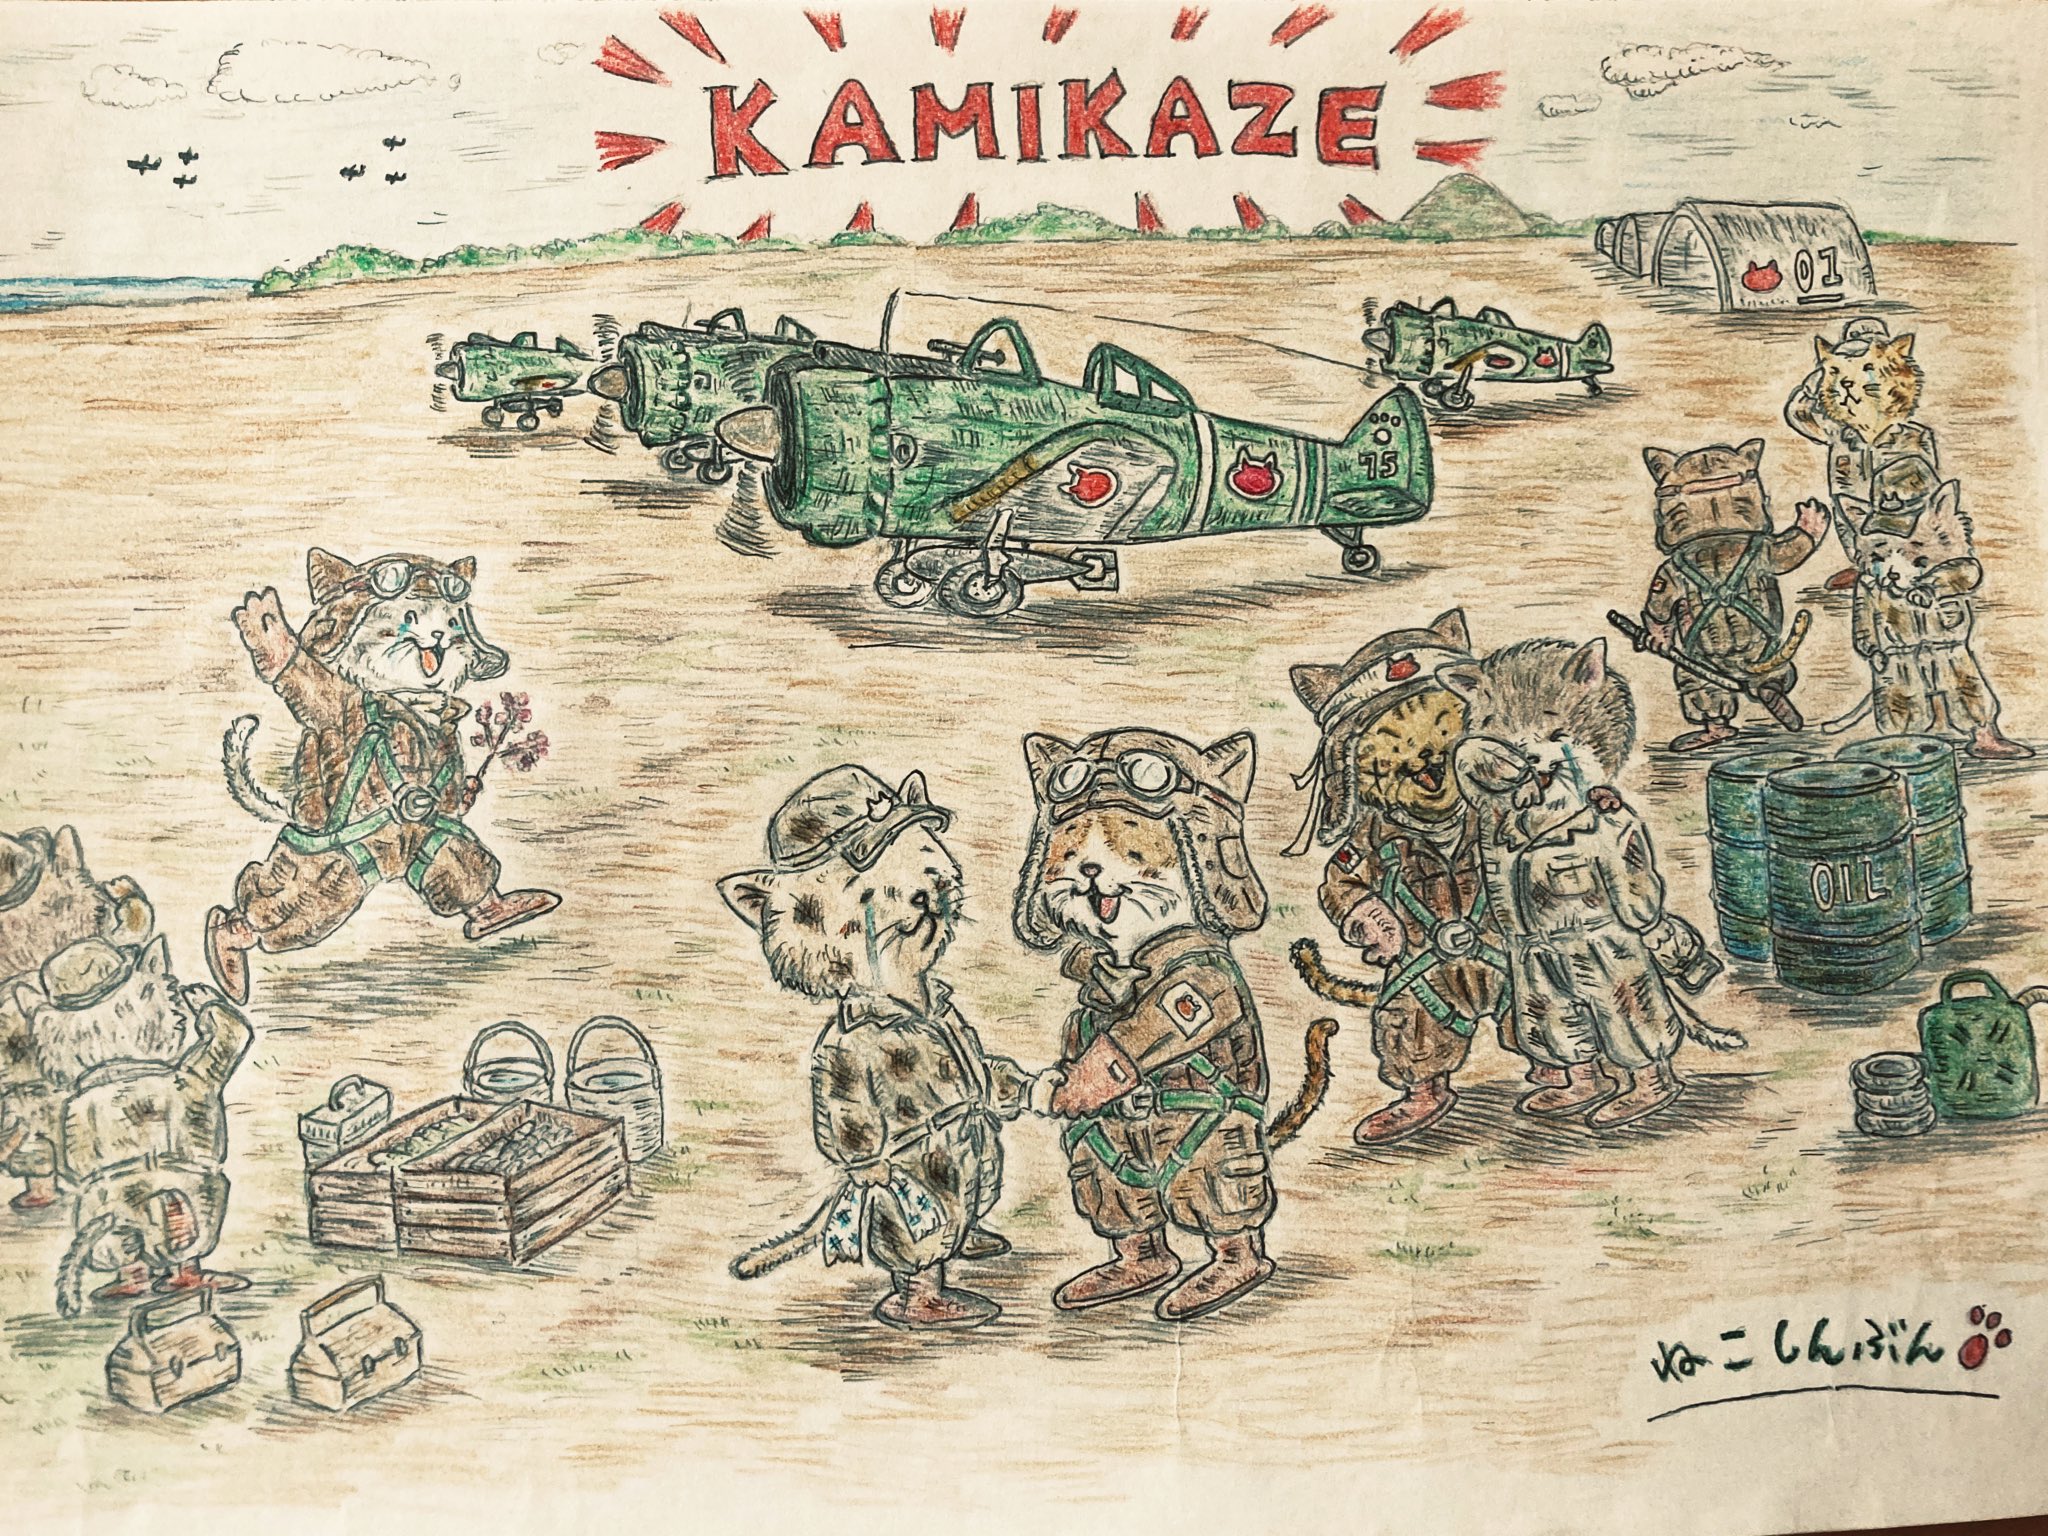 ねこしんぶん 今日は太平洋戦争開戦日 1941 昭和16 年のこの日 日本海軍はアメリカ海軍の基地があるハワイの真珠湾を奇襲し 太平洋戦争が始まった 行ってきます あとは頼んだぞ 猫 猫イラスト イラスト Kamikaze 神風 T Co